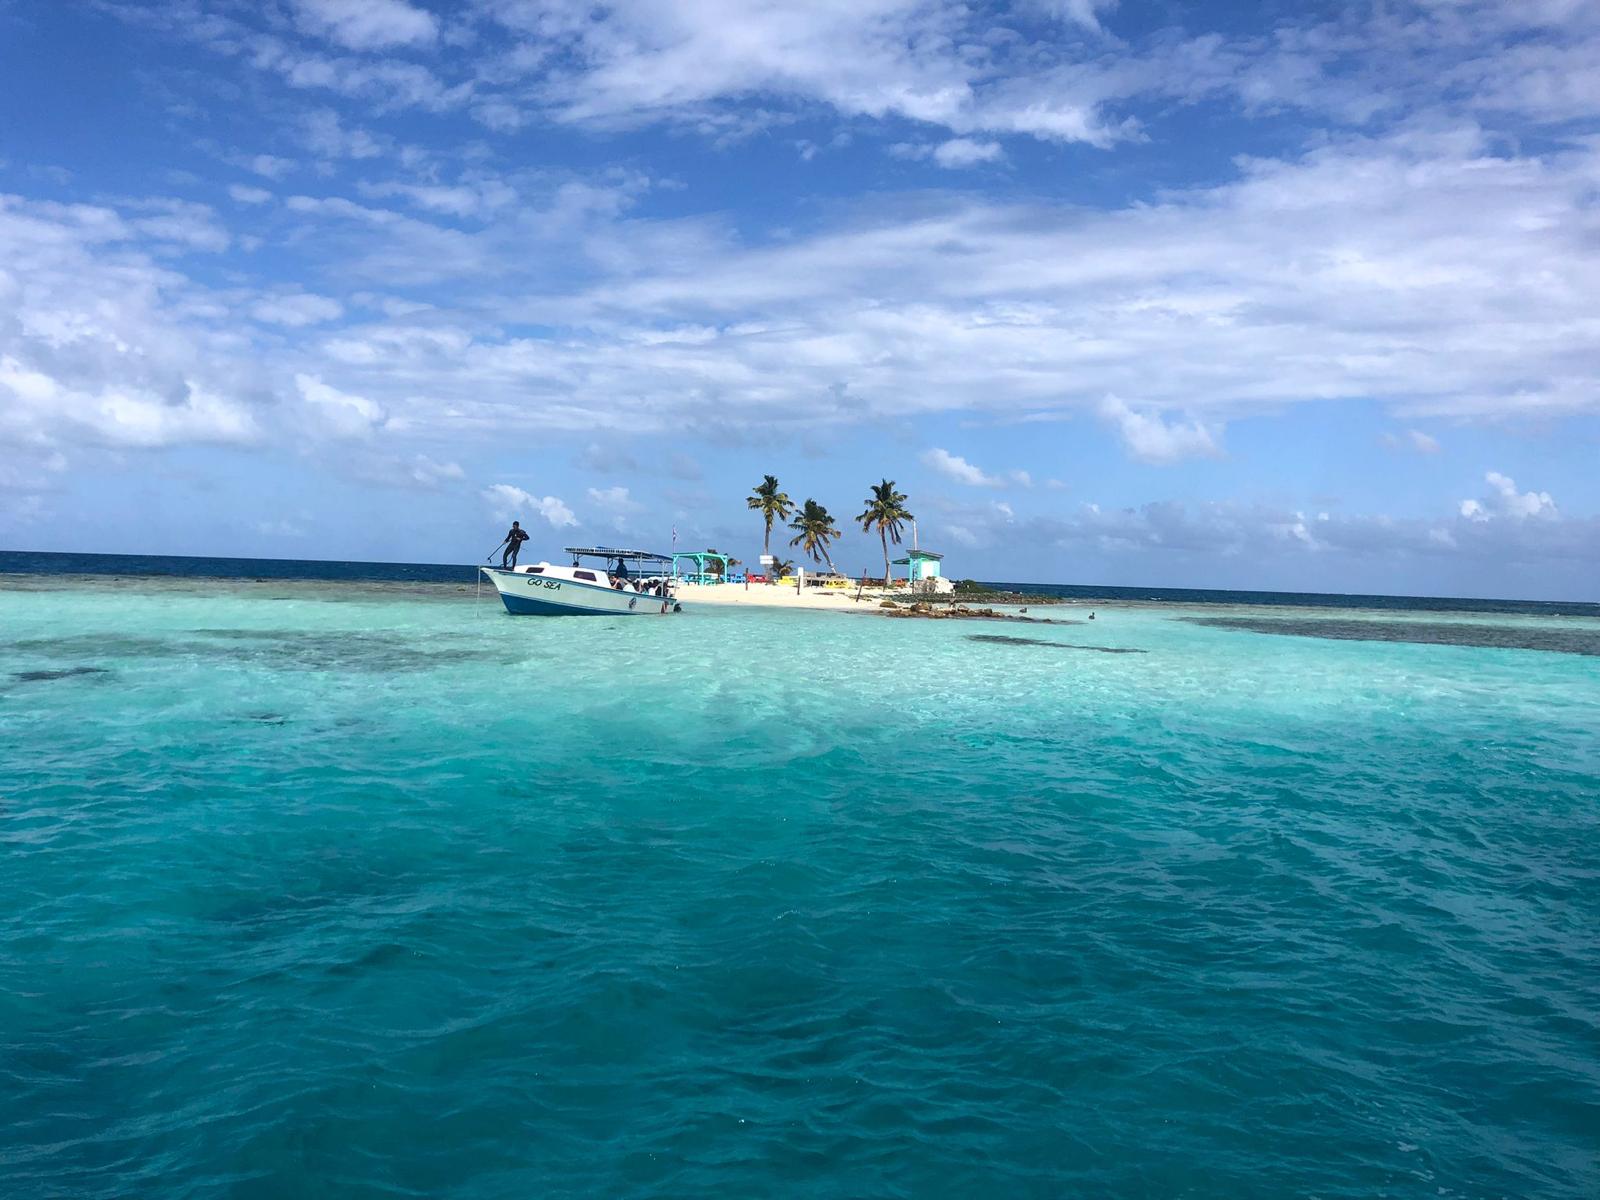 Ein Boot an einer traumhaften kleinen Insel in der Karibik in Belize